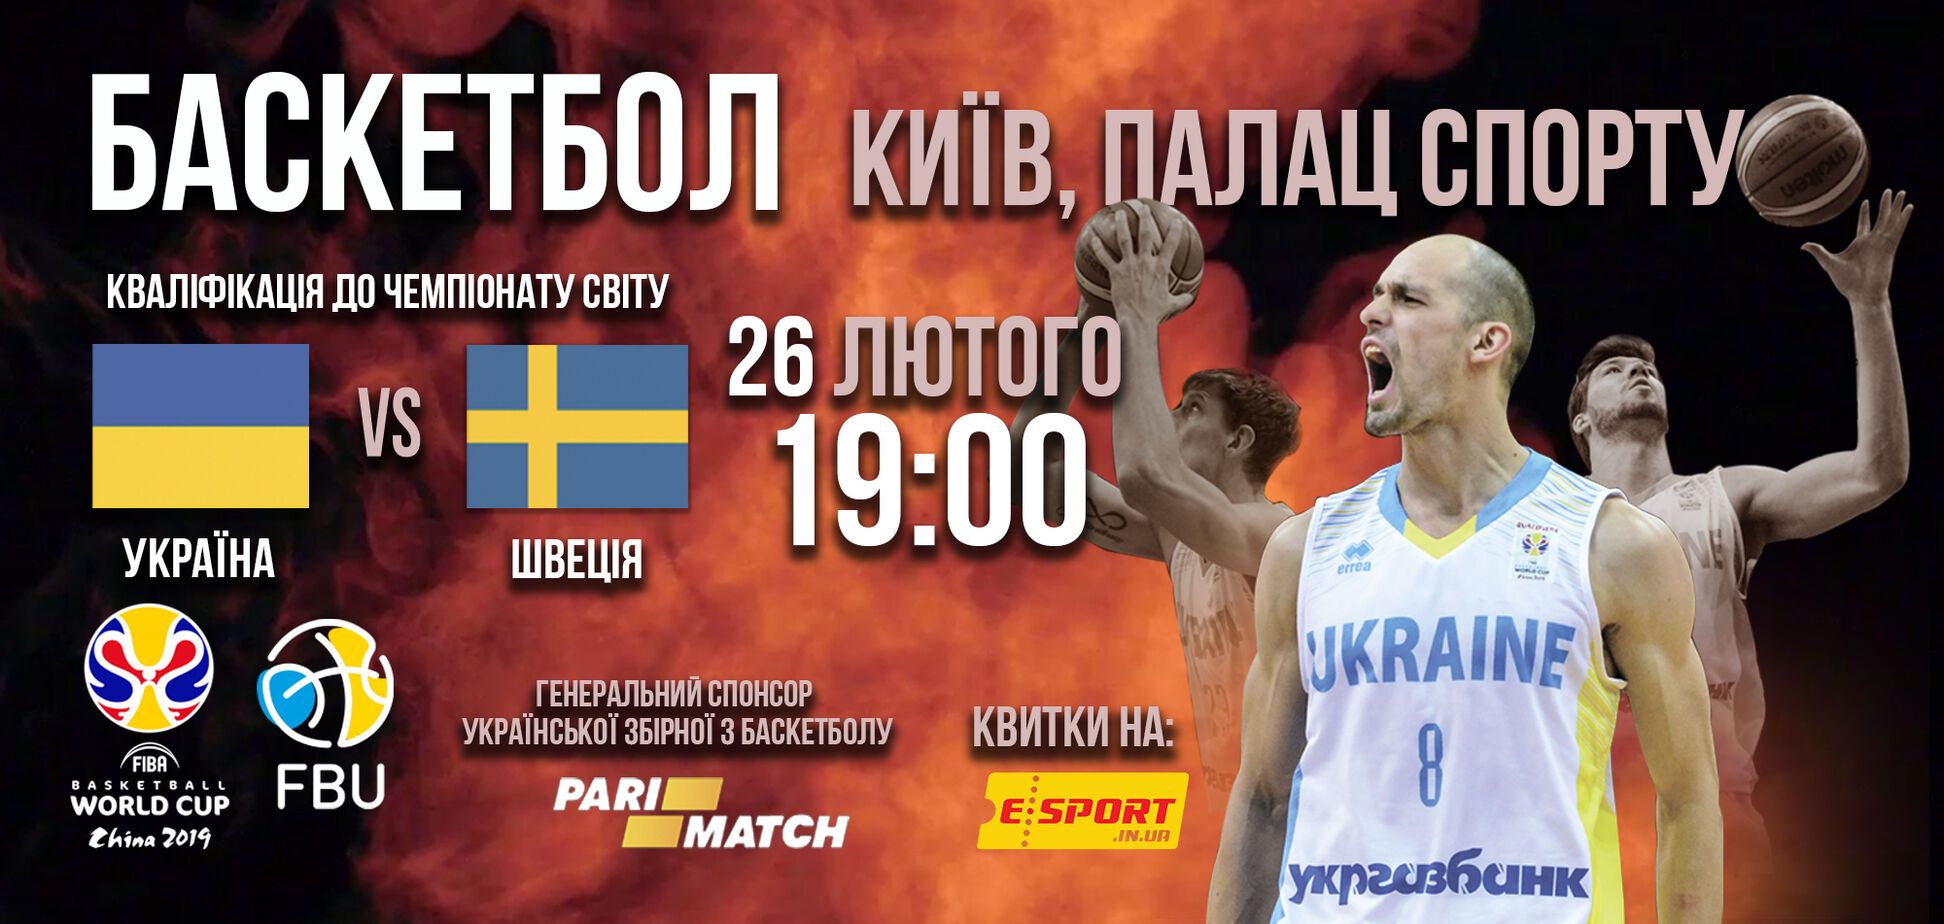 Отбор Кубка мира по баскетболу-2019: где купить билеты на киевский матч Украина - Швеция